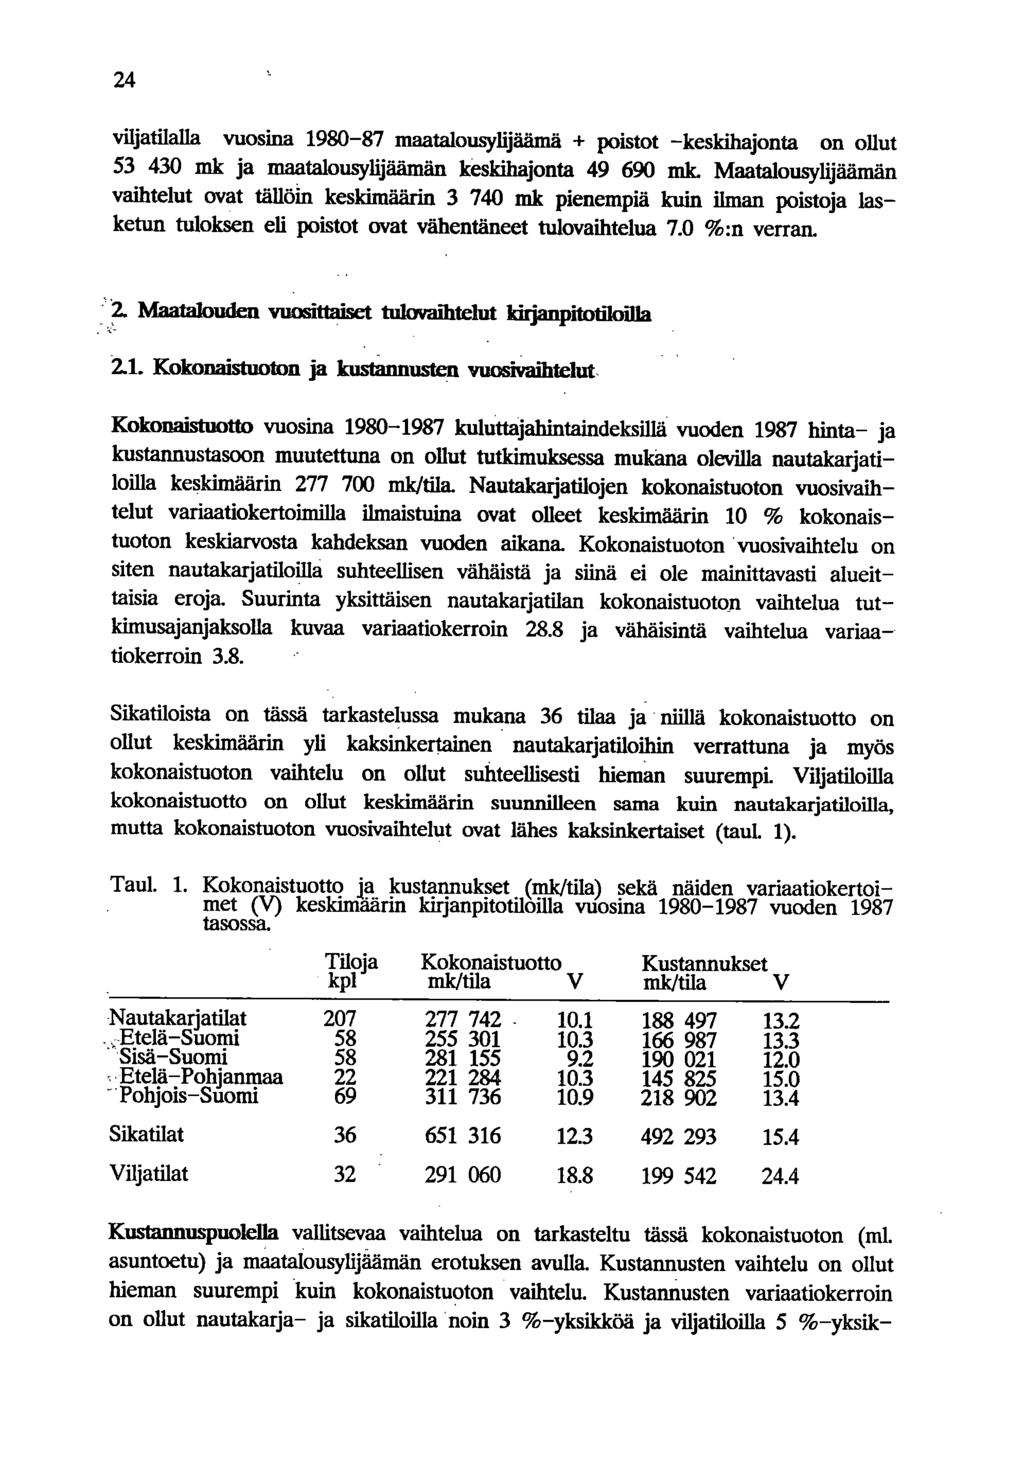 24 viljatilalla vuosina 198-87 maatalousylijäämä + poistot -keskihajonta on ollut 53 43 mk ja maatalousylijäämän keskihajonta 49 69 mk.